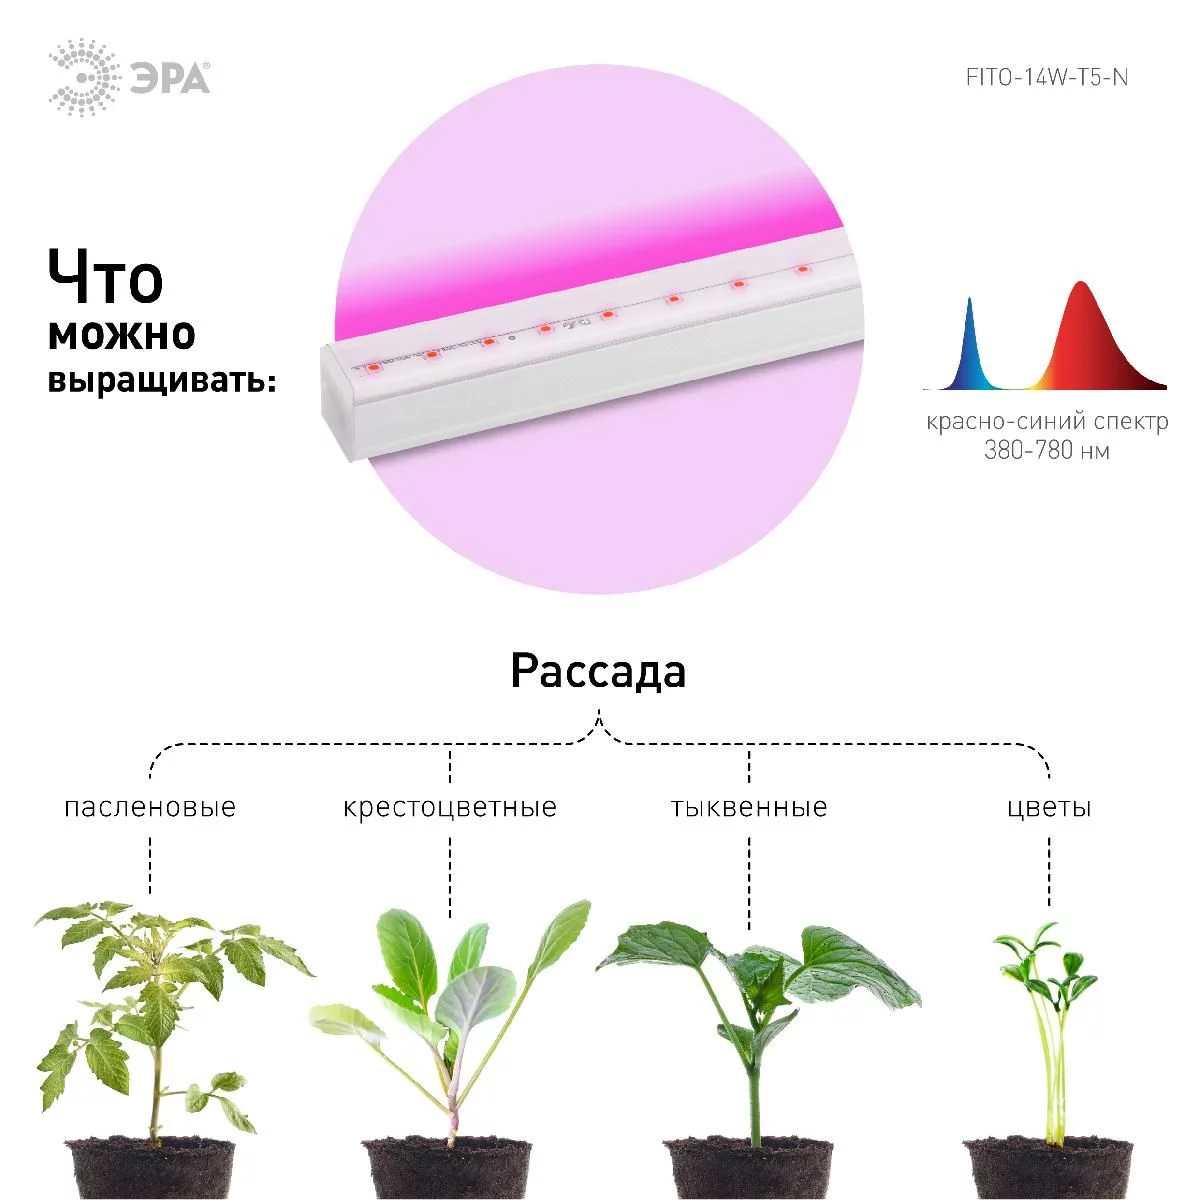 Светильник для растений, фитолампа светодиодная линейная ЭРА FITO-14W-Т5-N красно-синего спектра 14 Вт Т5